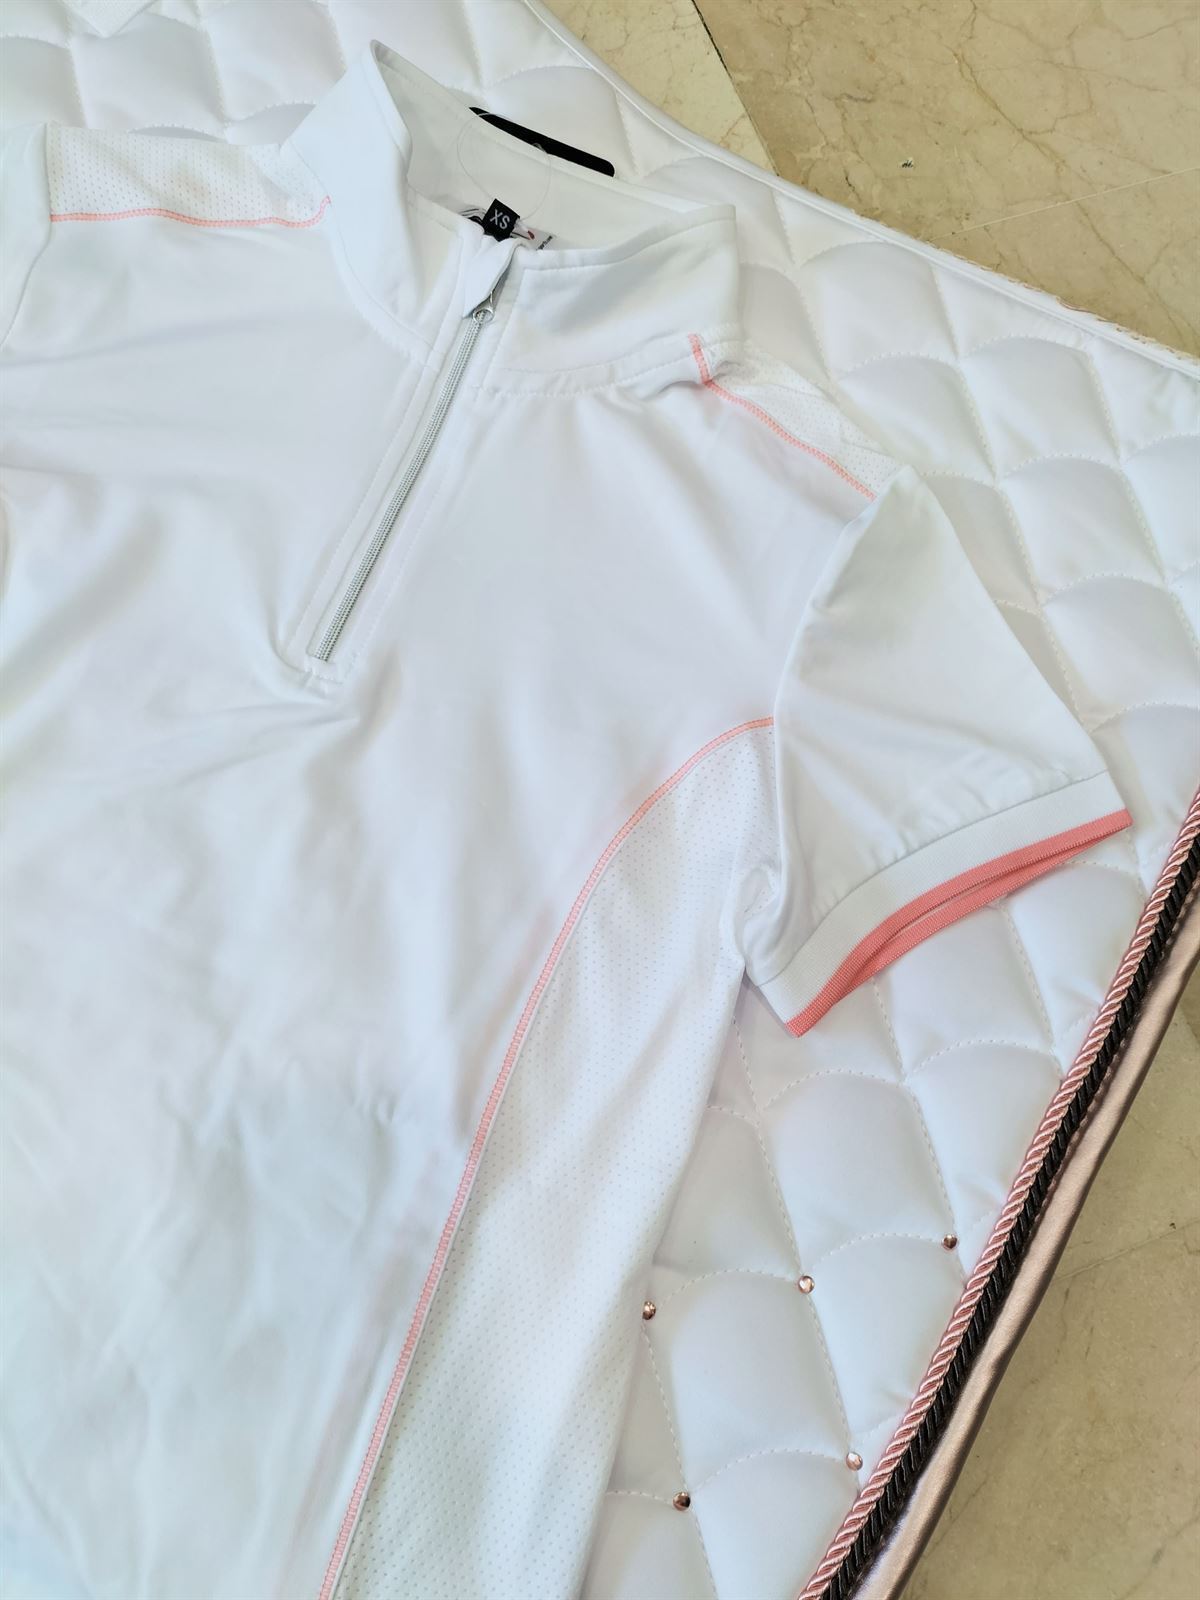 Polo concurso mujer HKM Sports Equipment Equilibrio Style color blanco con costura coral - Imagen 1